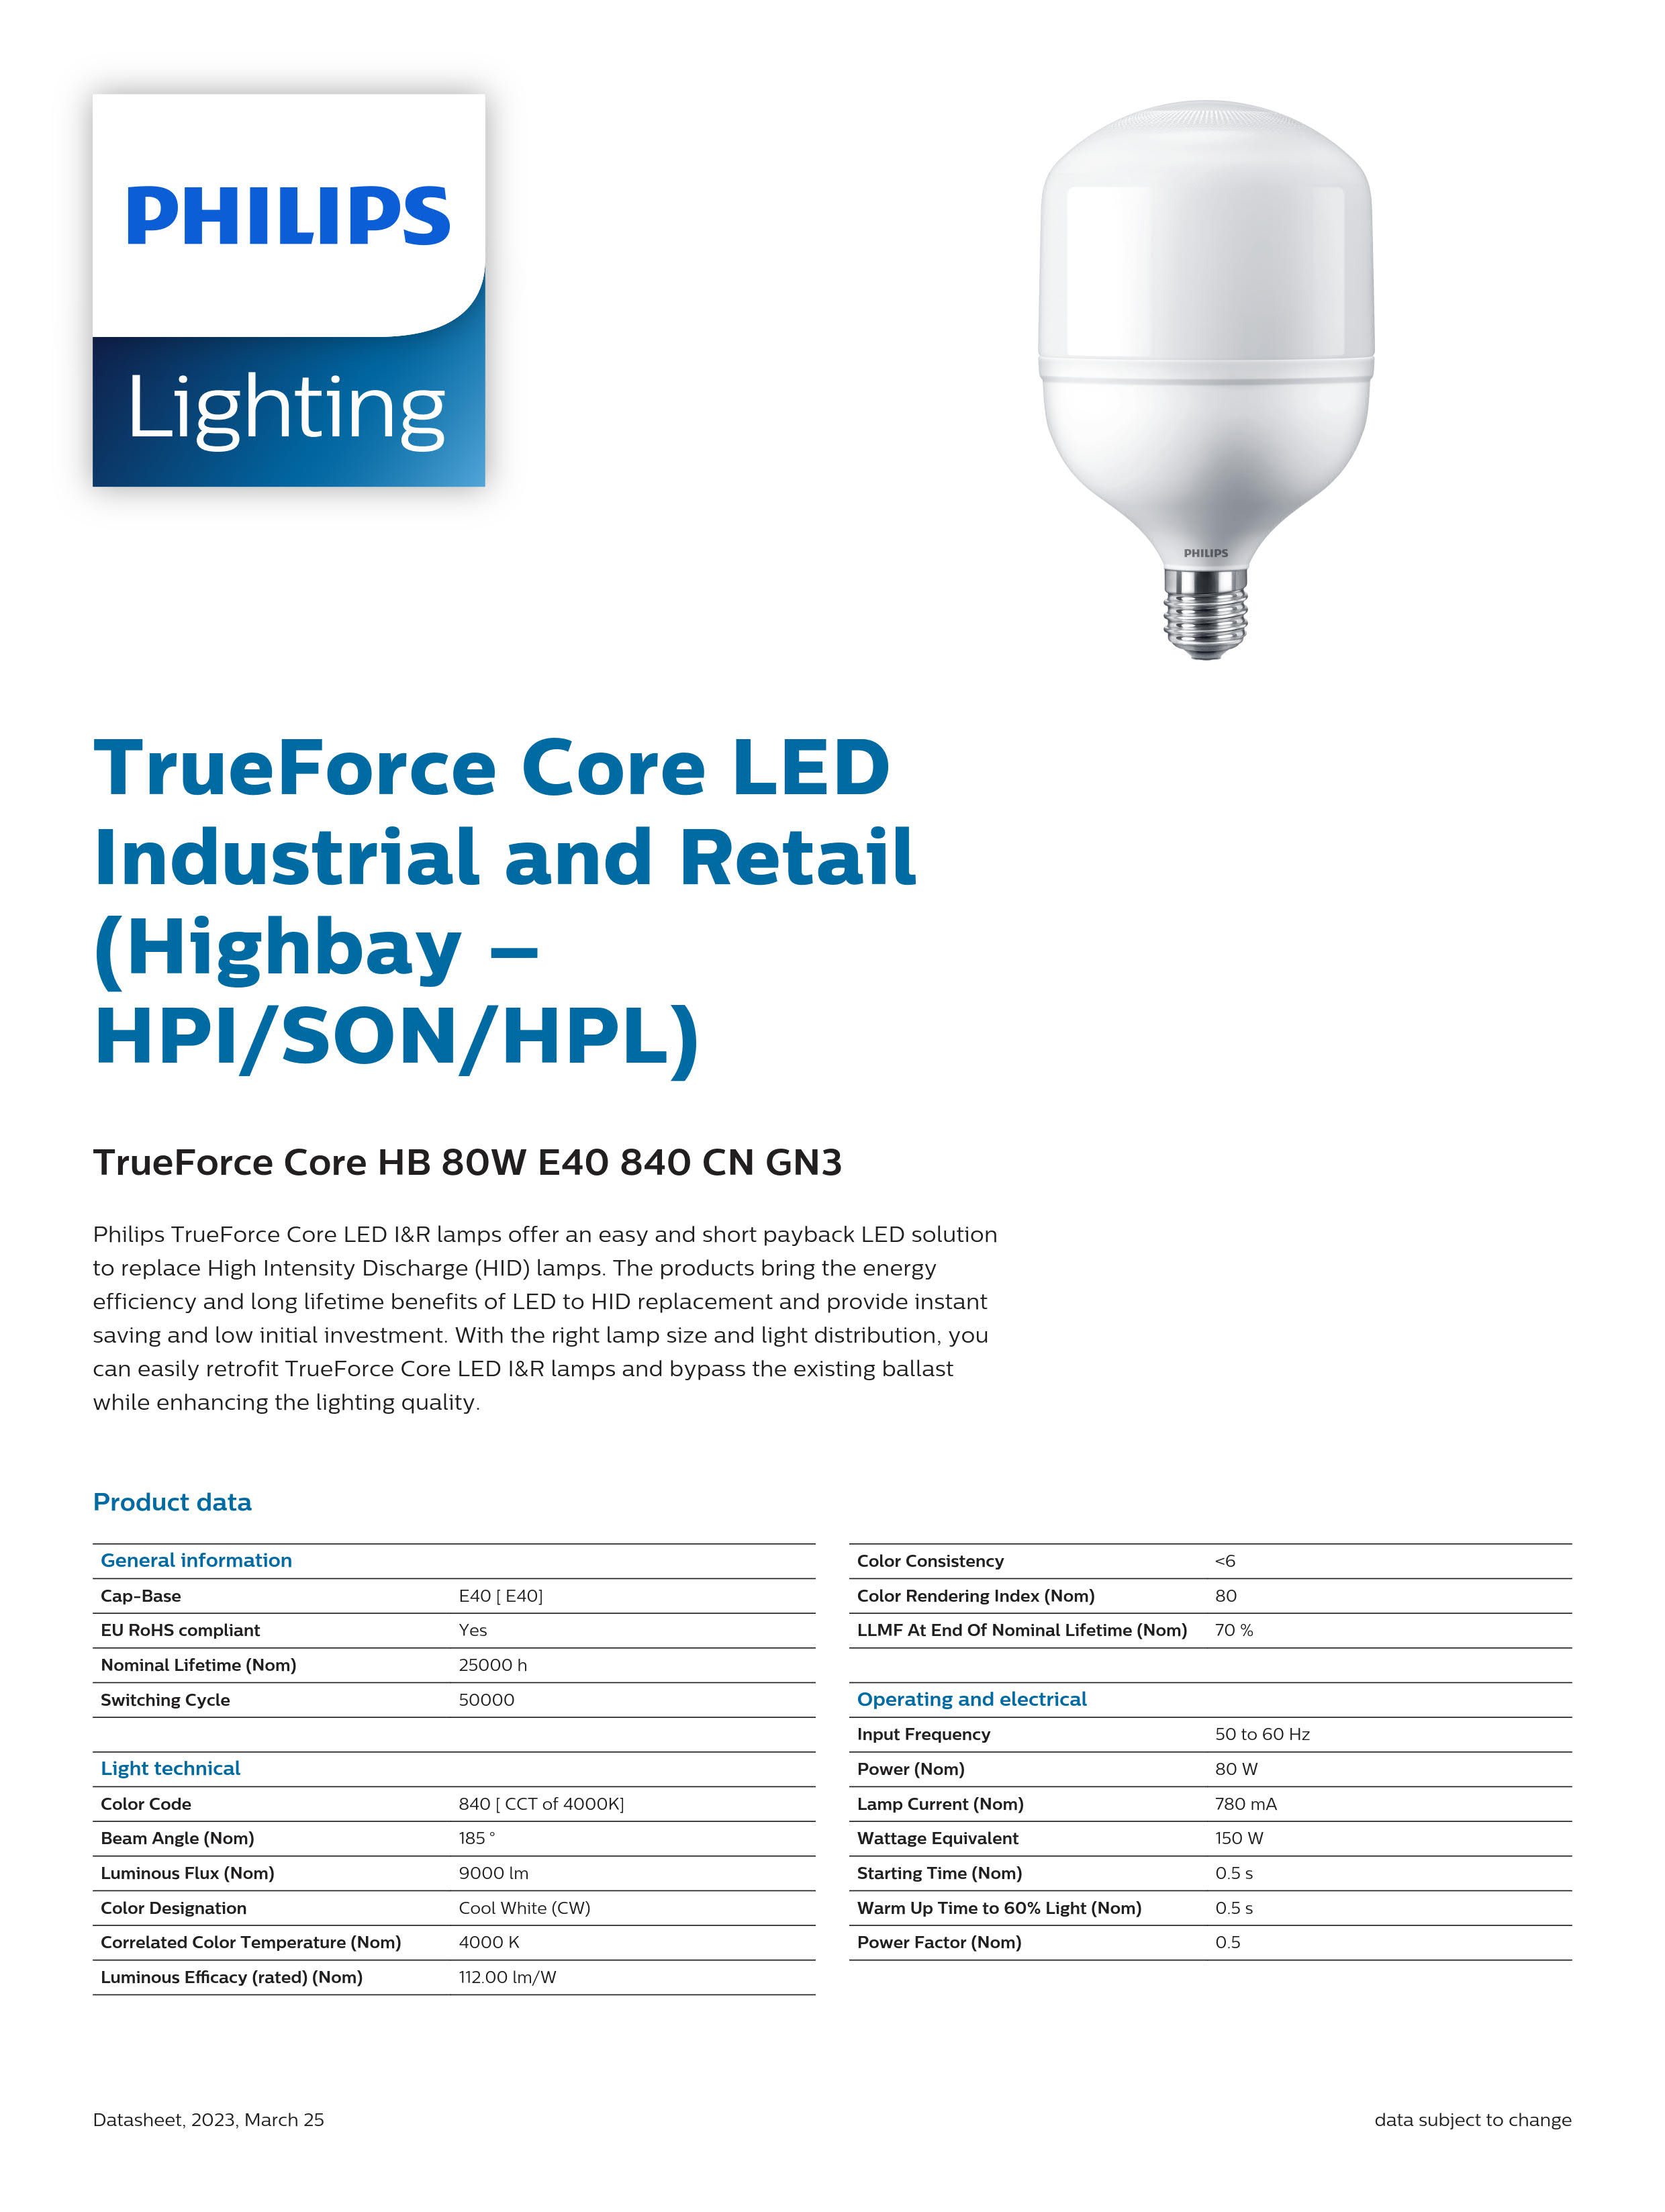 PHILIPS LED Bulb TrueForce Core HB 80W E40 840 CN GN3 929002409210